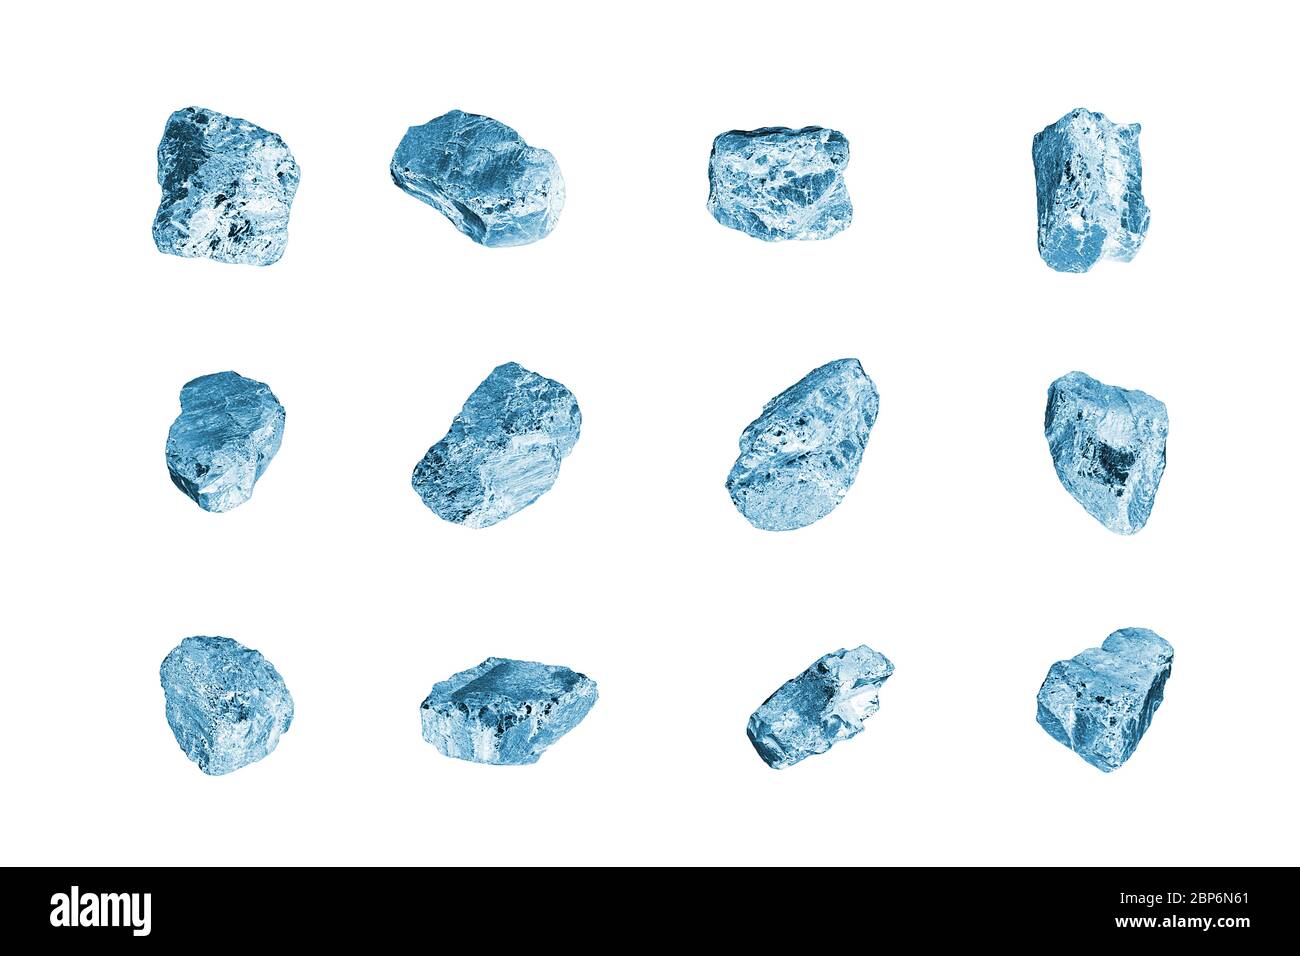 Pietre blu gemma sfondo bianco closeup isolato, set di cubetti di ghiaccio tritato, raccolta di diamanti grezzi, grezzi brillanti texture, rocce, cristalli, minerale Foto Stock